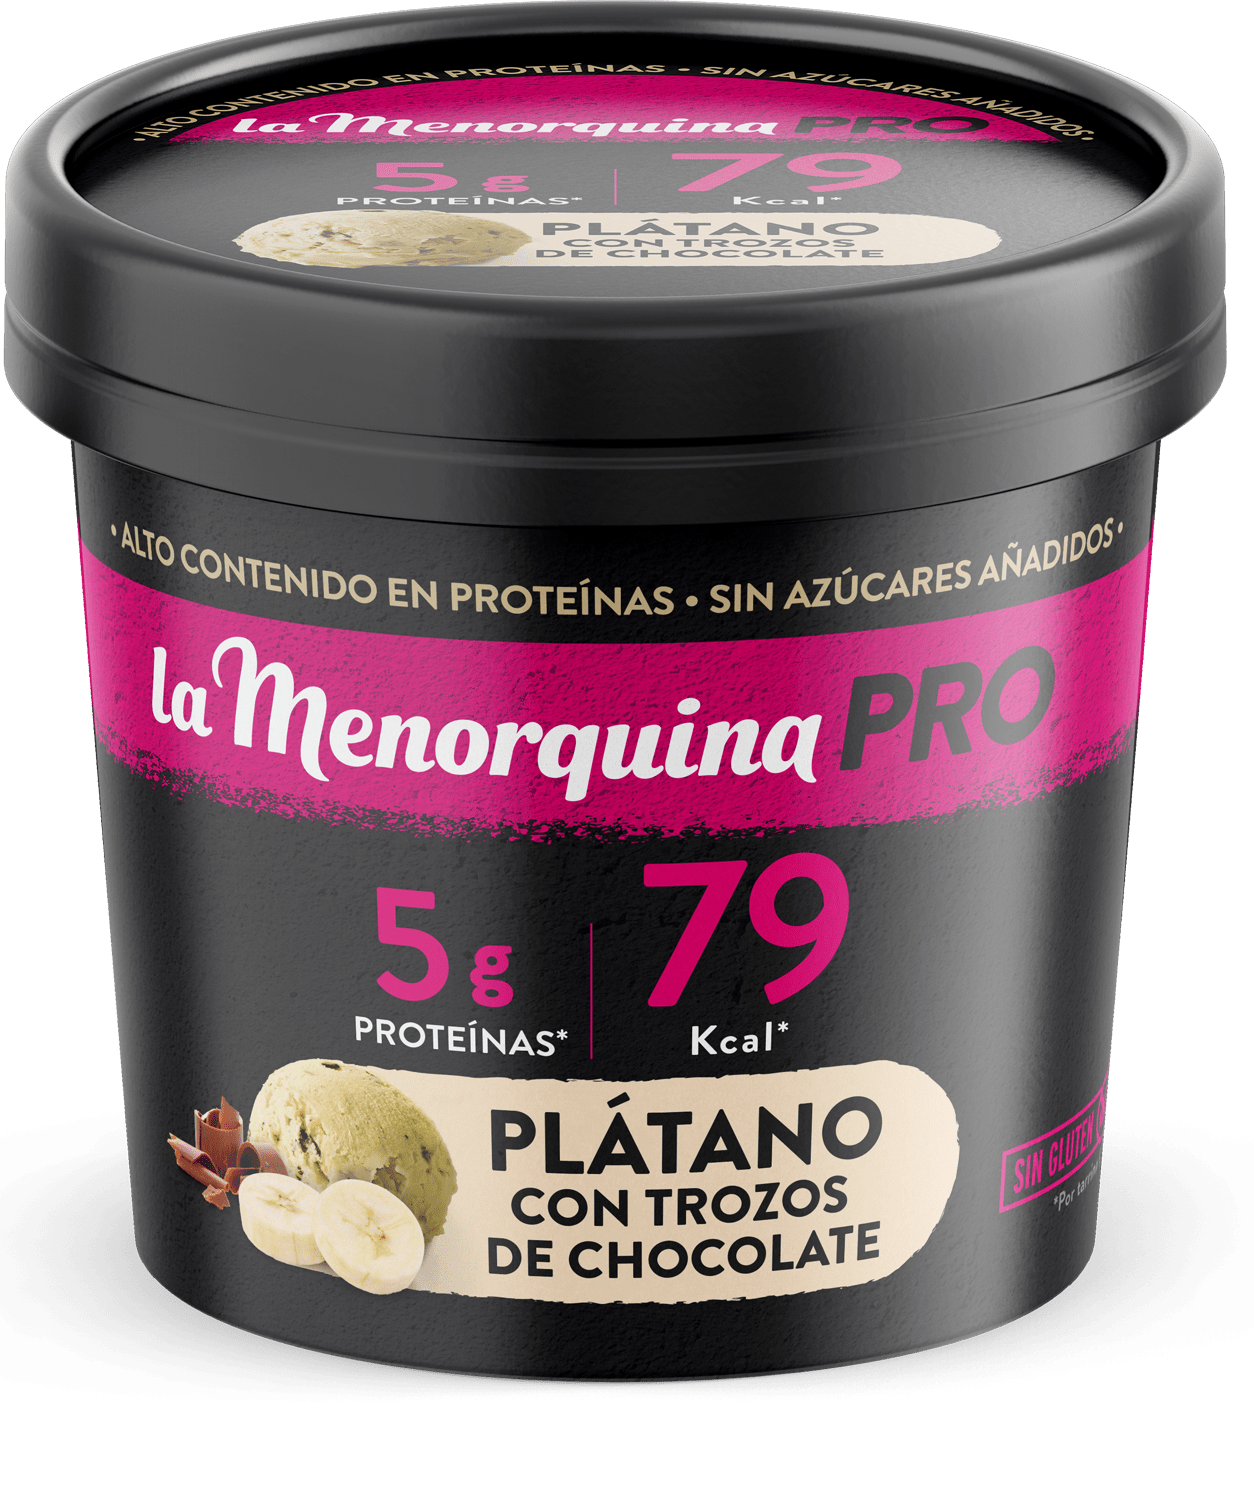 /pt/produtos/sanduiches/platano-con-trozos-de-chocolate/